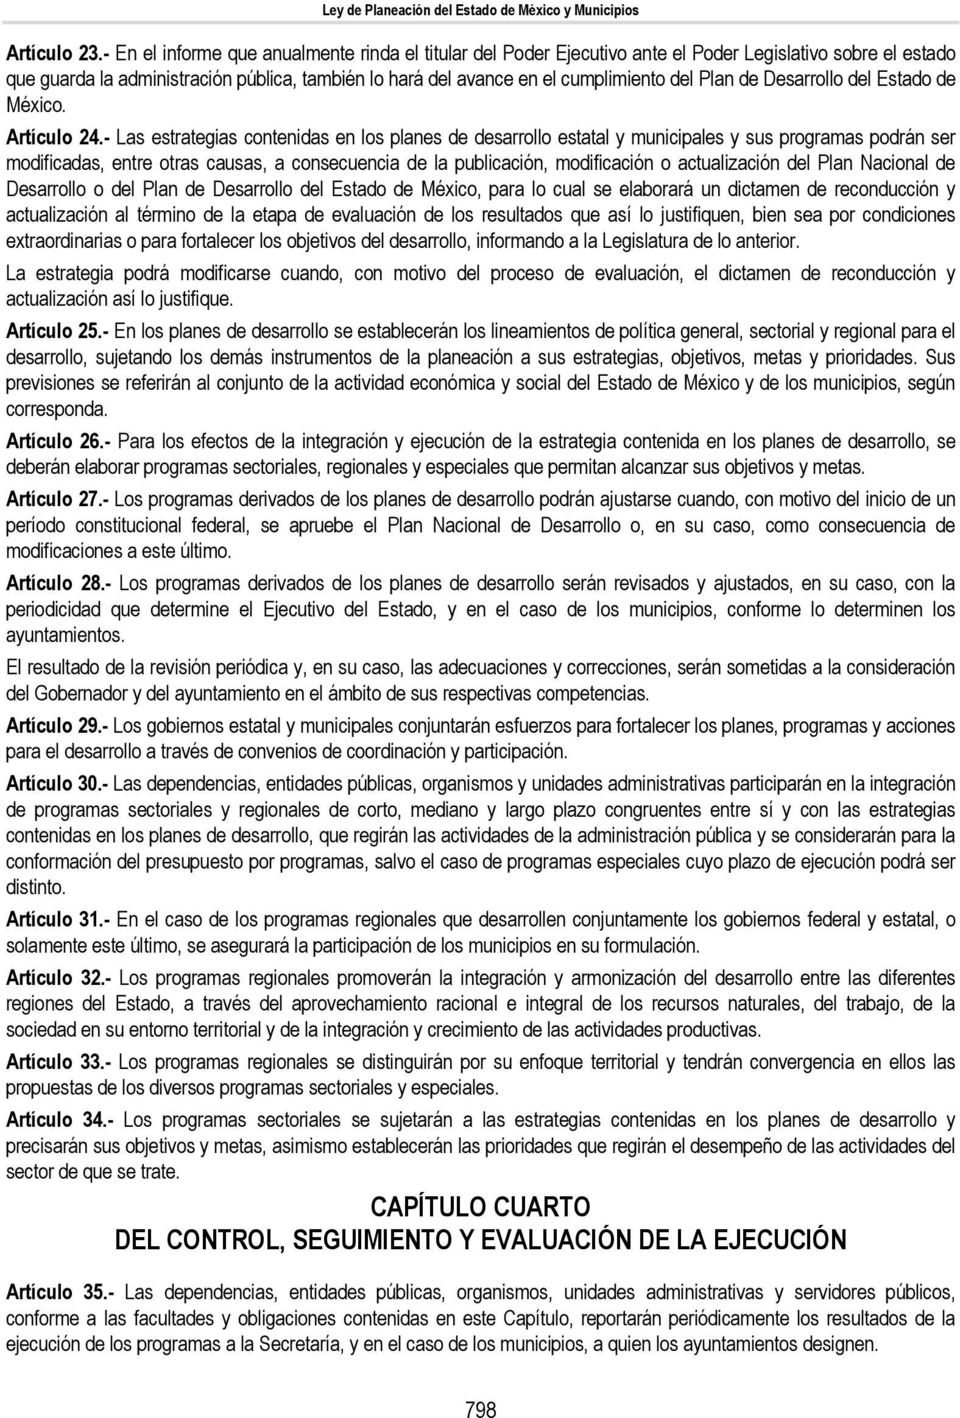 Plan de Desarrollo del Estado de México. Artículo 24.